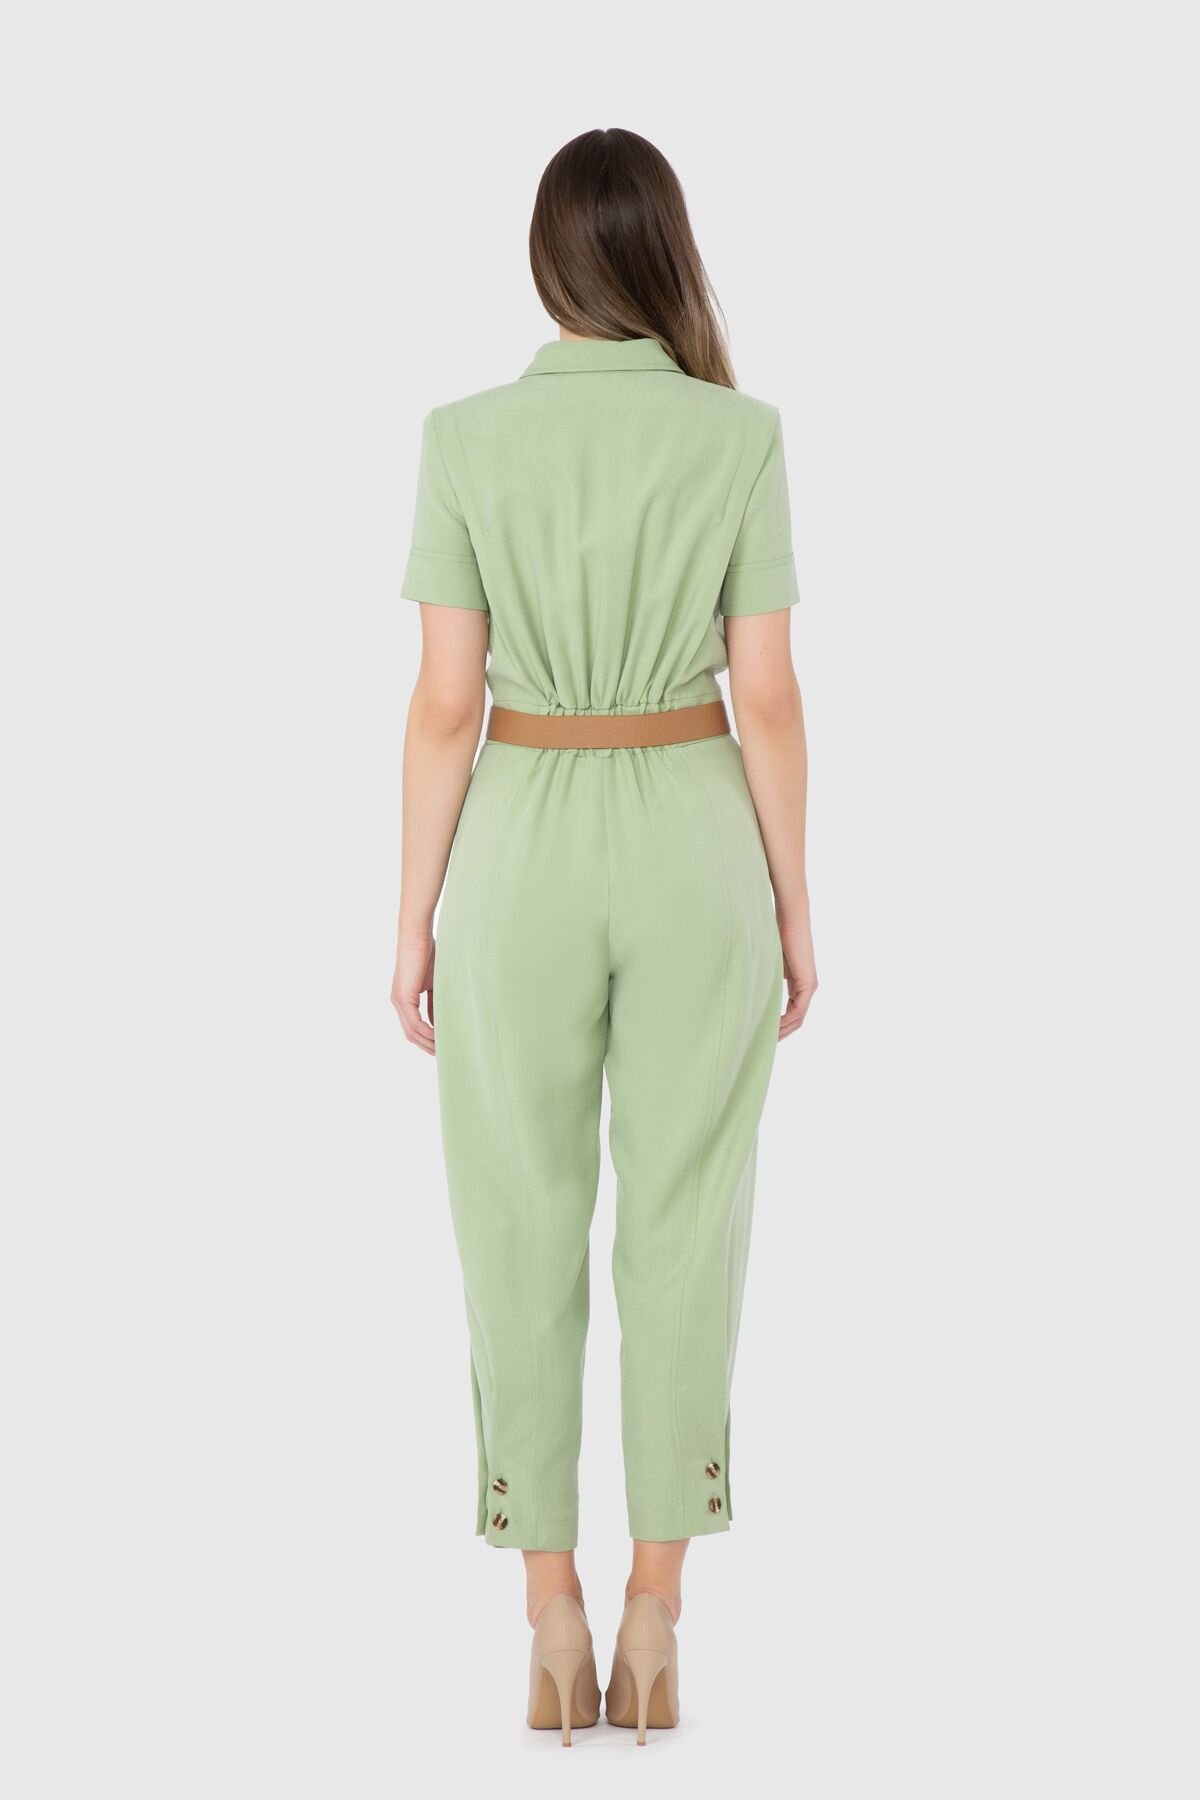 Short Leg Button Detailed Waist Belt Green Jumpsuit Dress